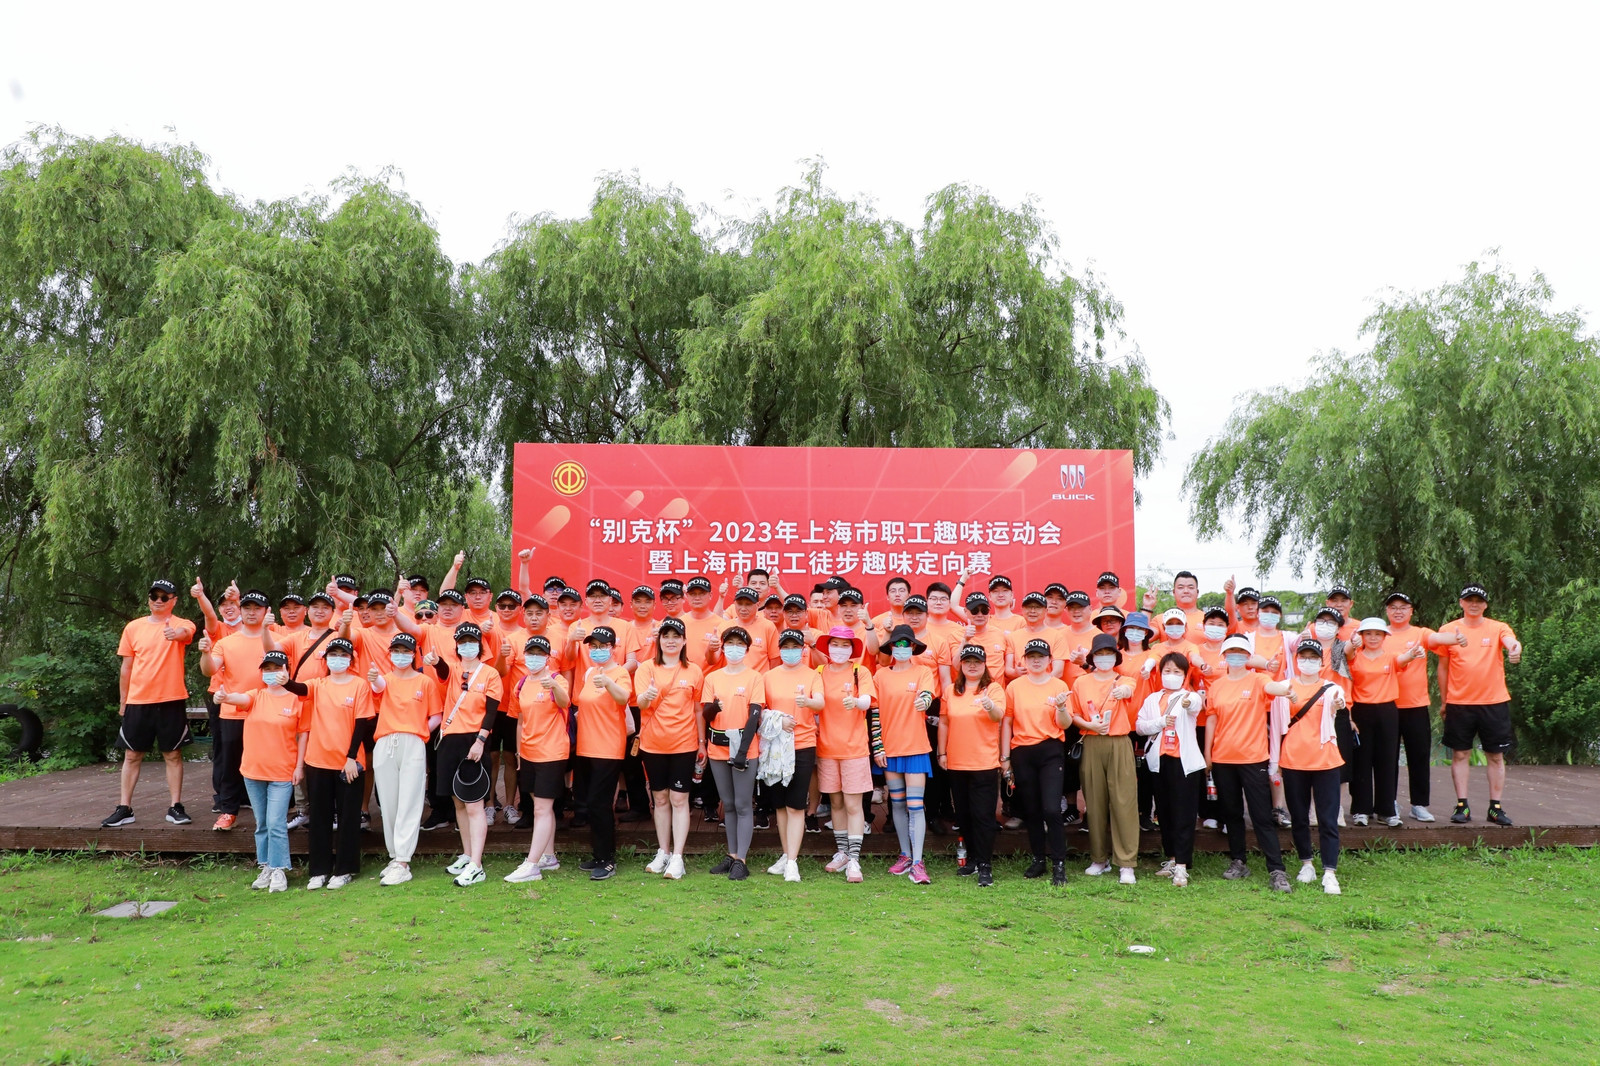 工会文体活动|“别克杯”2023年上海市职工趣味运动会暨上海市职工徒步趣味定向赛